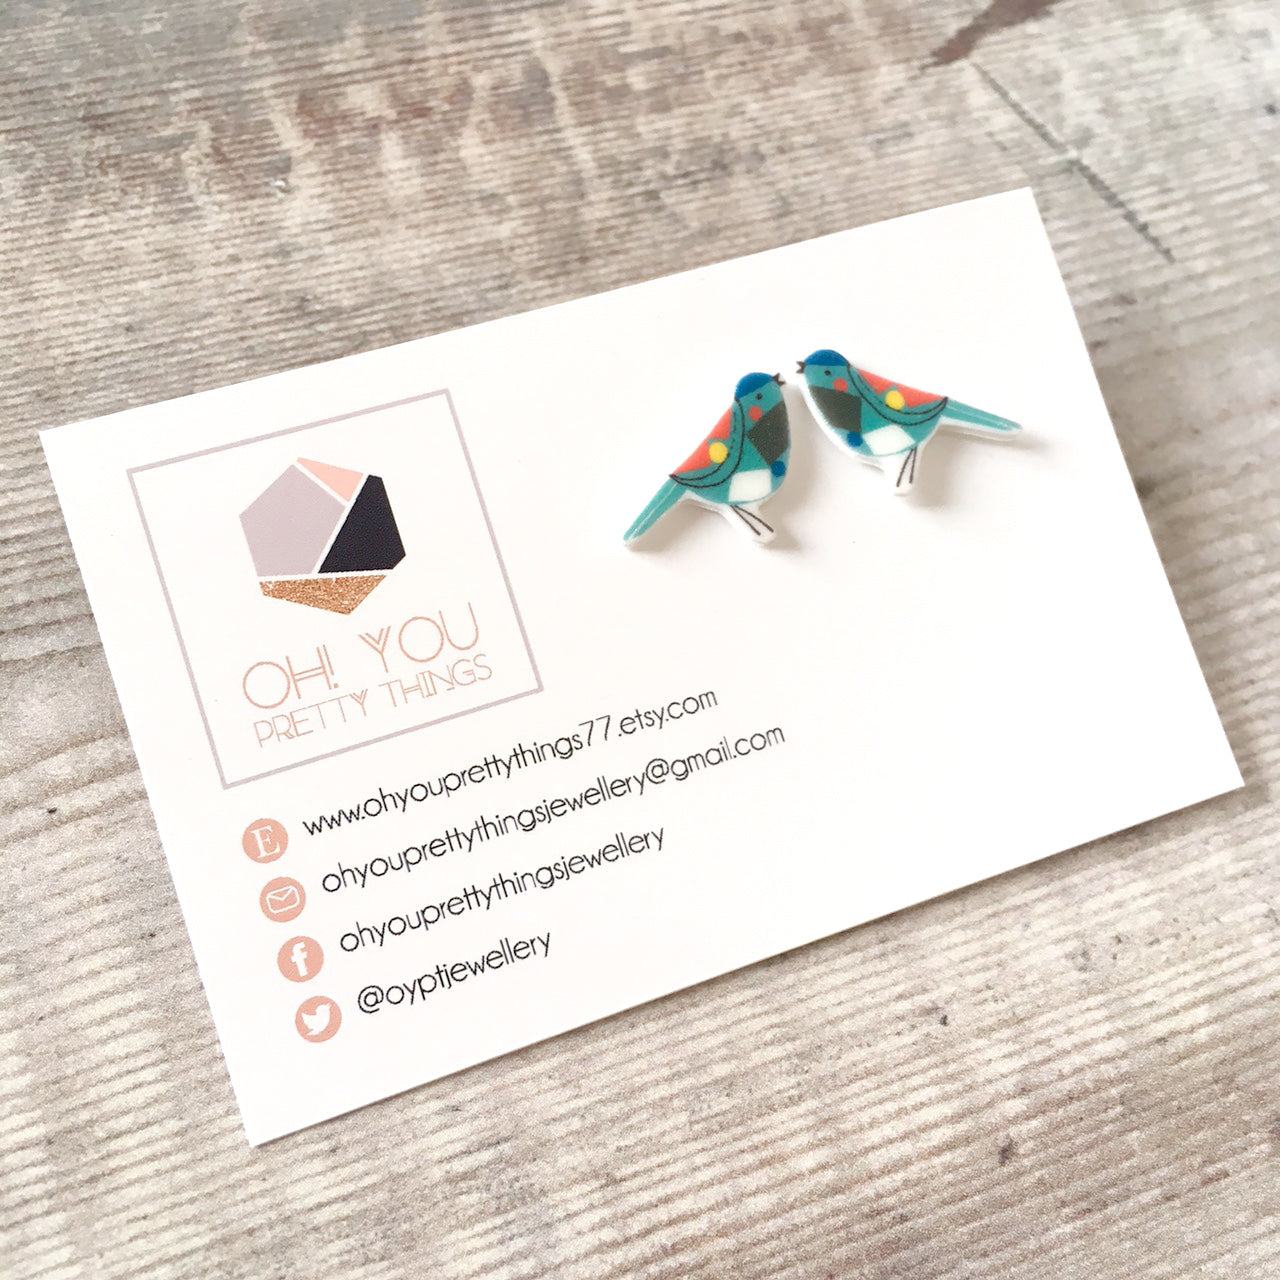 Blue bird lover geometric stud earrings - Cute teen gift